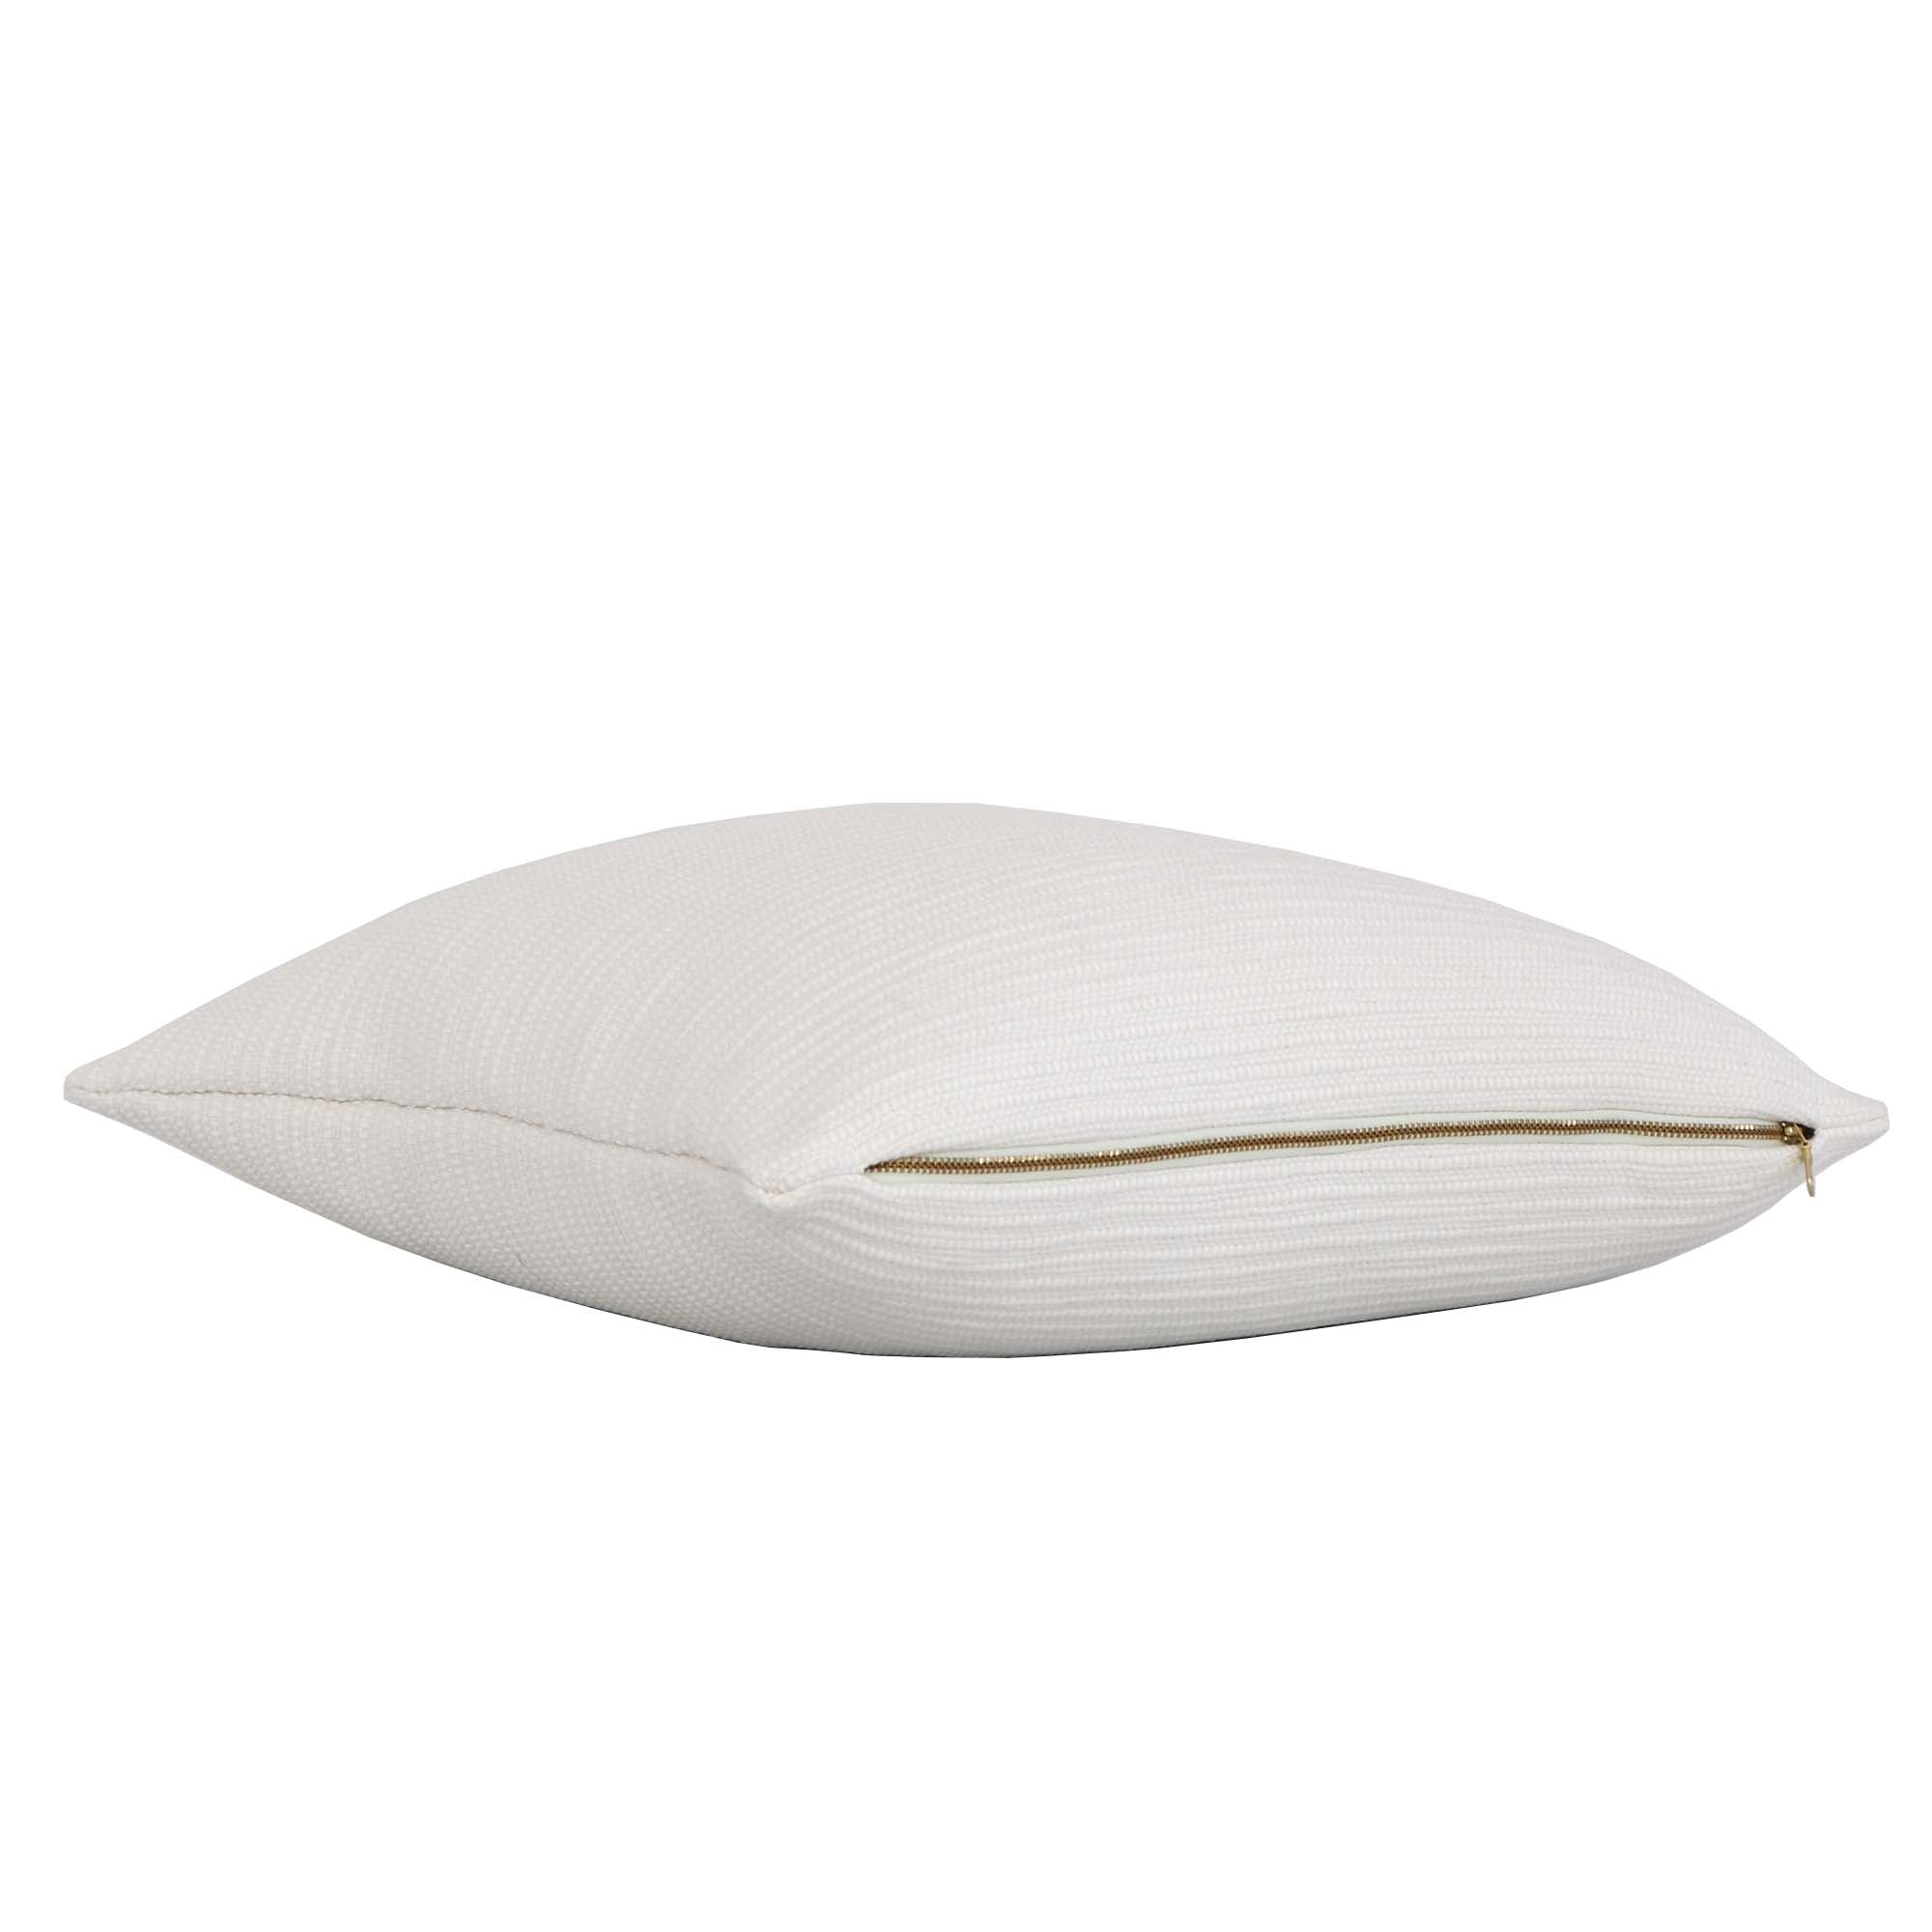 Zak + Fox Jibari Textured White Luxury Designer Throw Pillow Cover with Exposed Gold Zipper